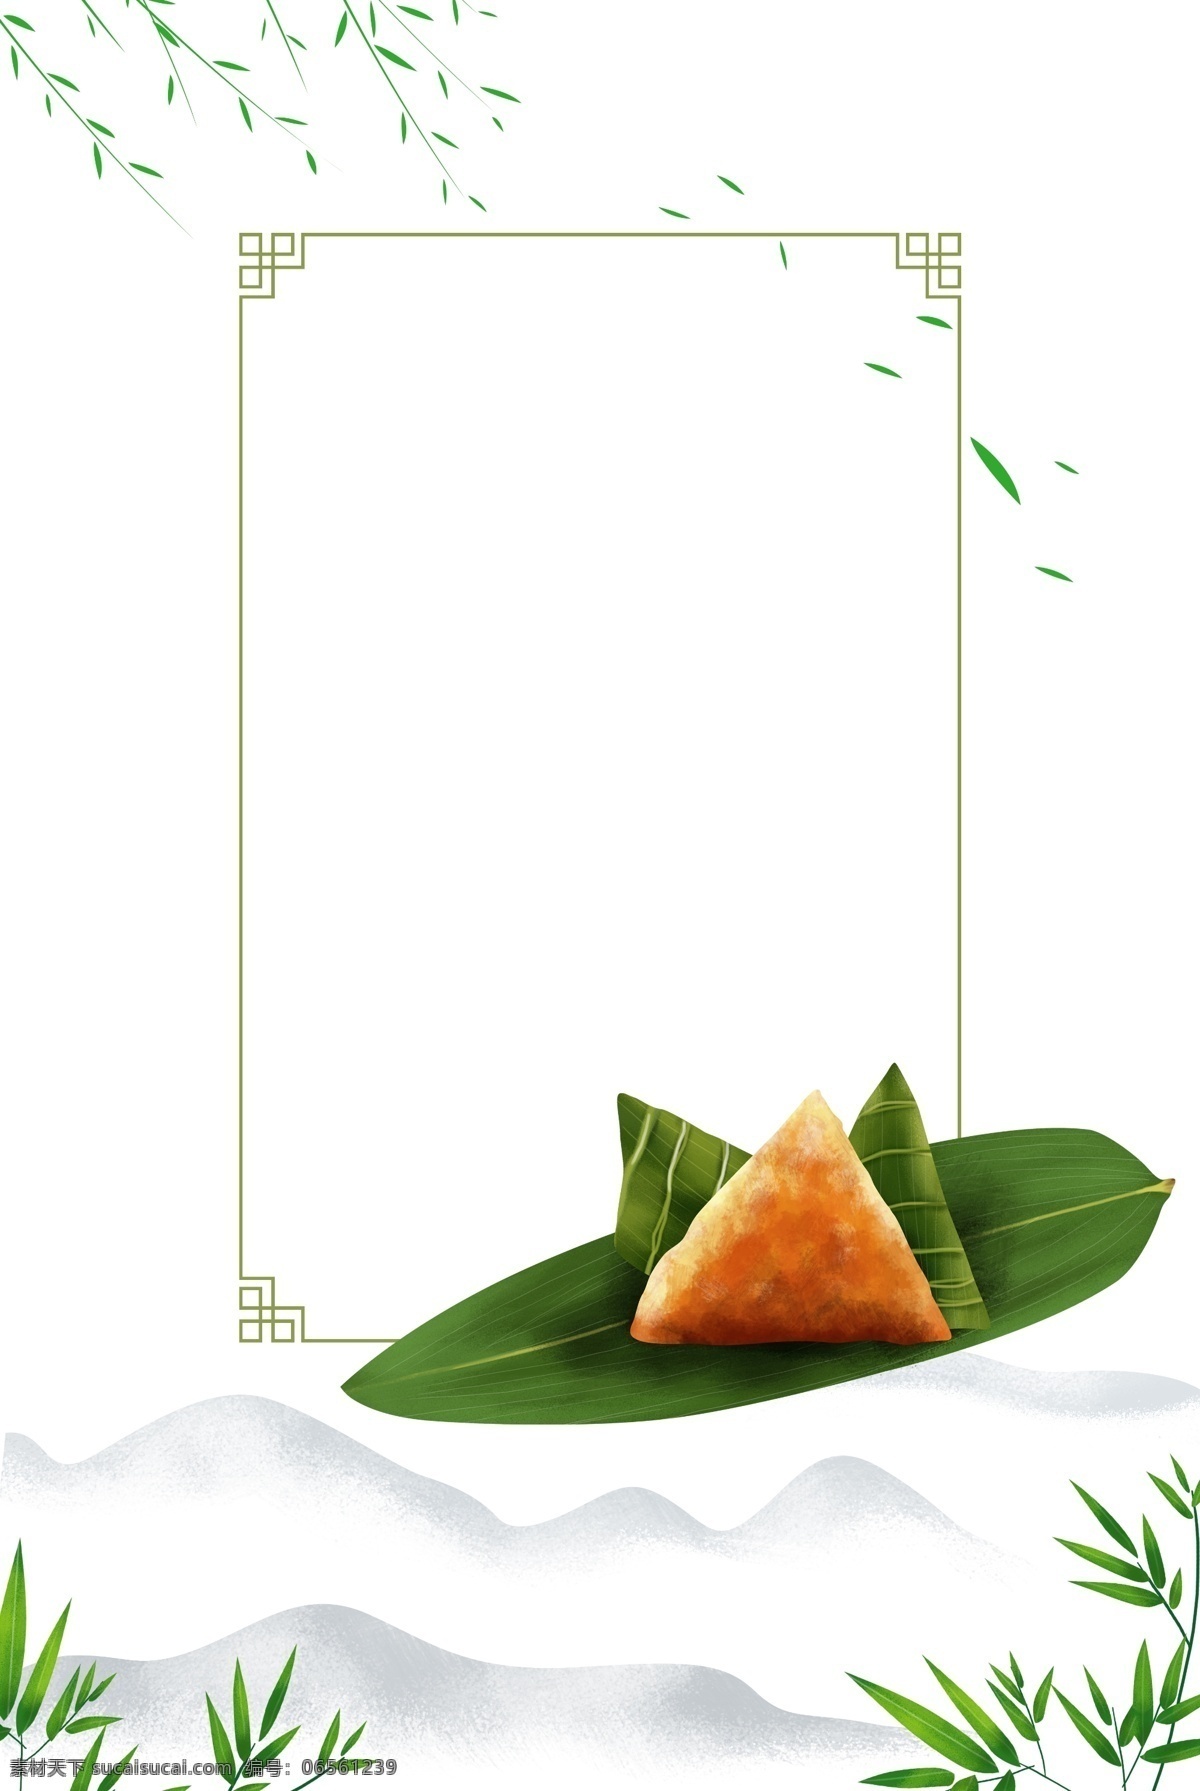 端午节 中式 风格 海报 边框 叶子 漂浮的叶子 粽子 粽叶 中式边框 绿色边框 端午 竹子 竹叶 传统节日 美食 植物边框